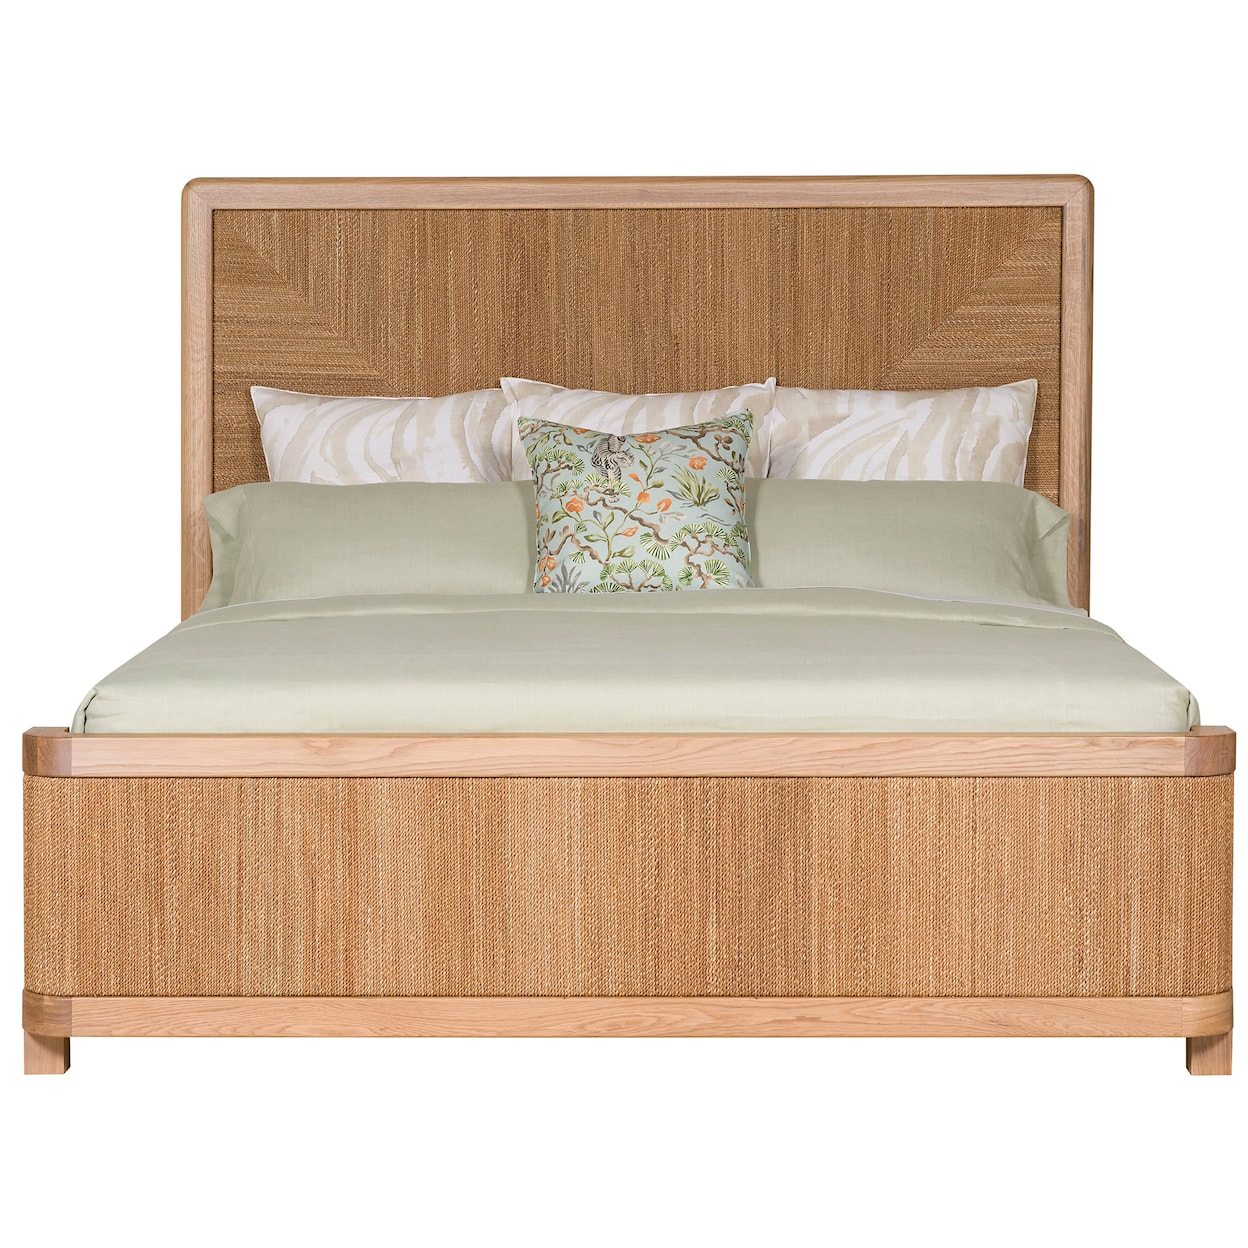 Vanguard Furniture Form King Panel Bed